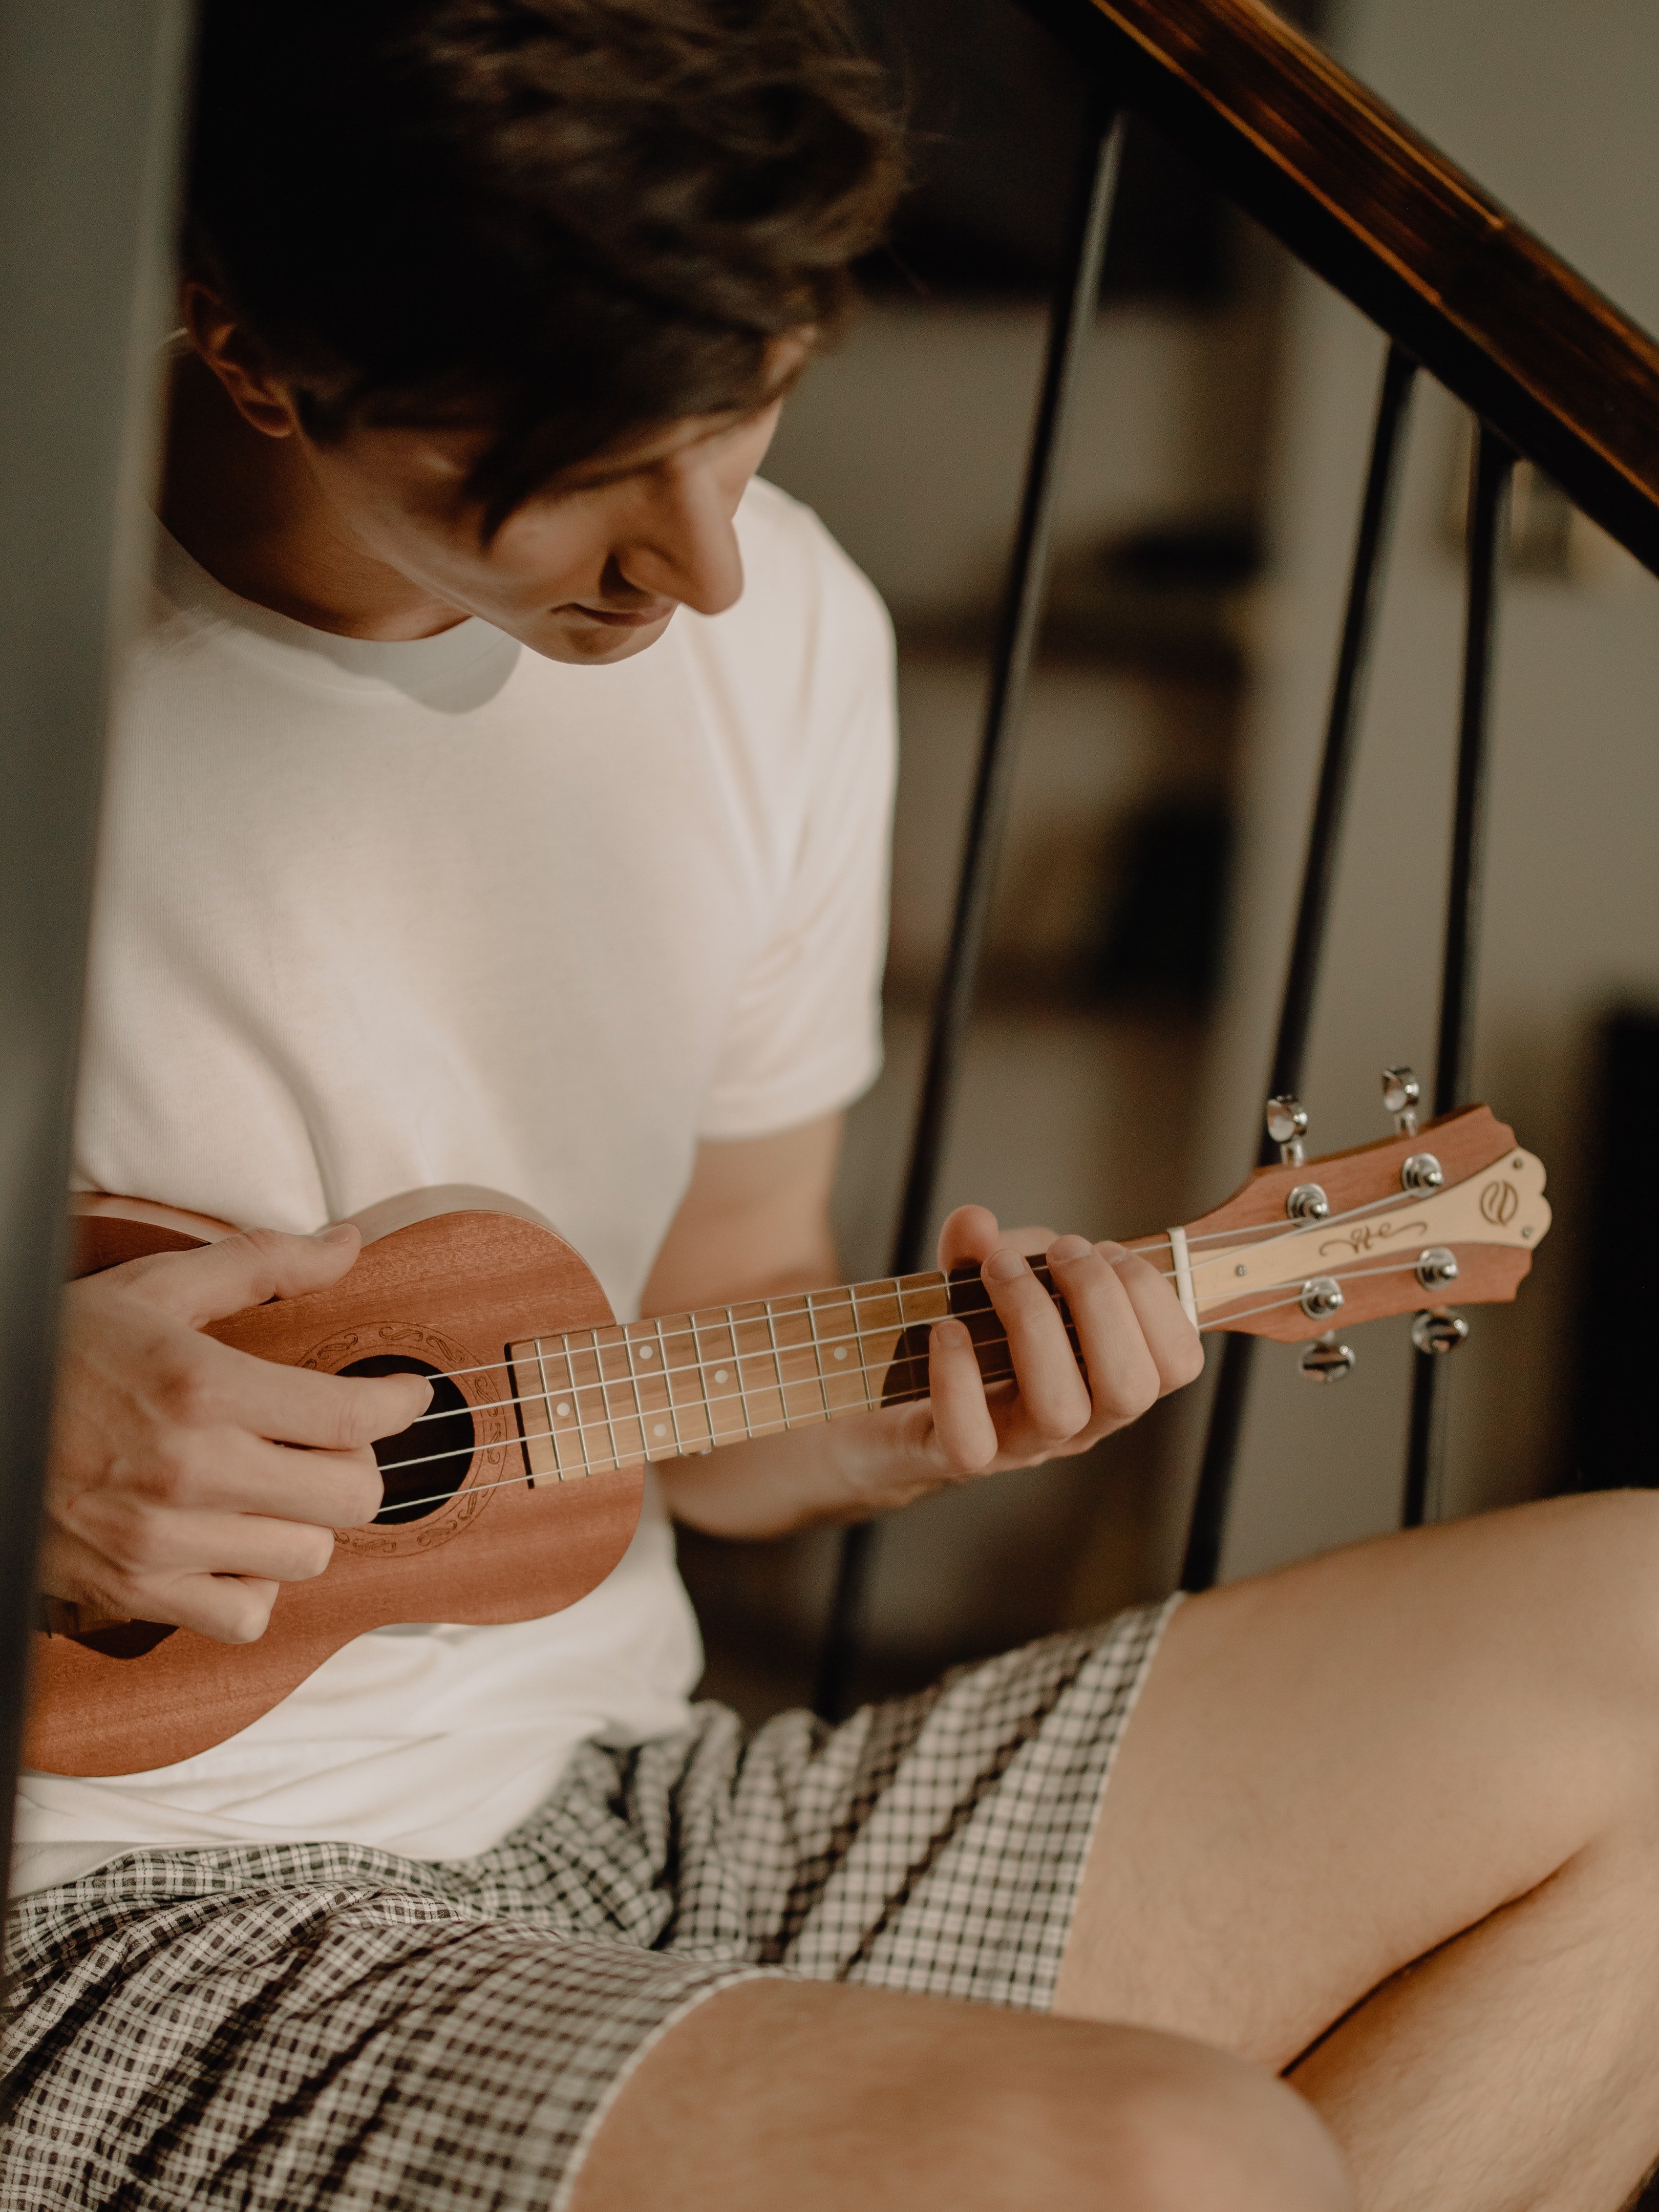 Un joven tocando un ukulele. | Foto: Pexels